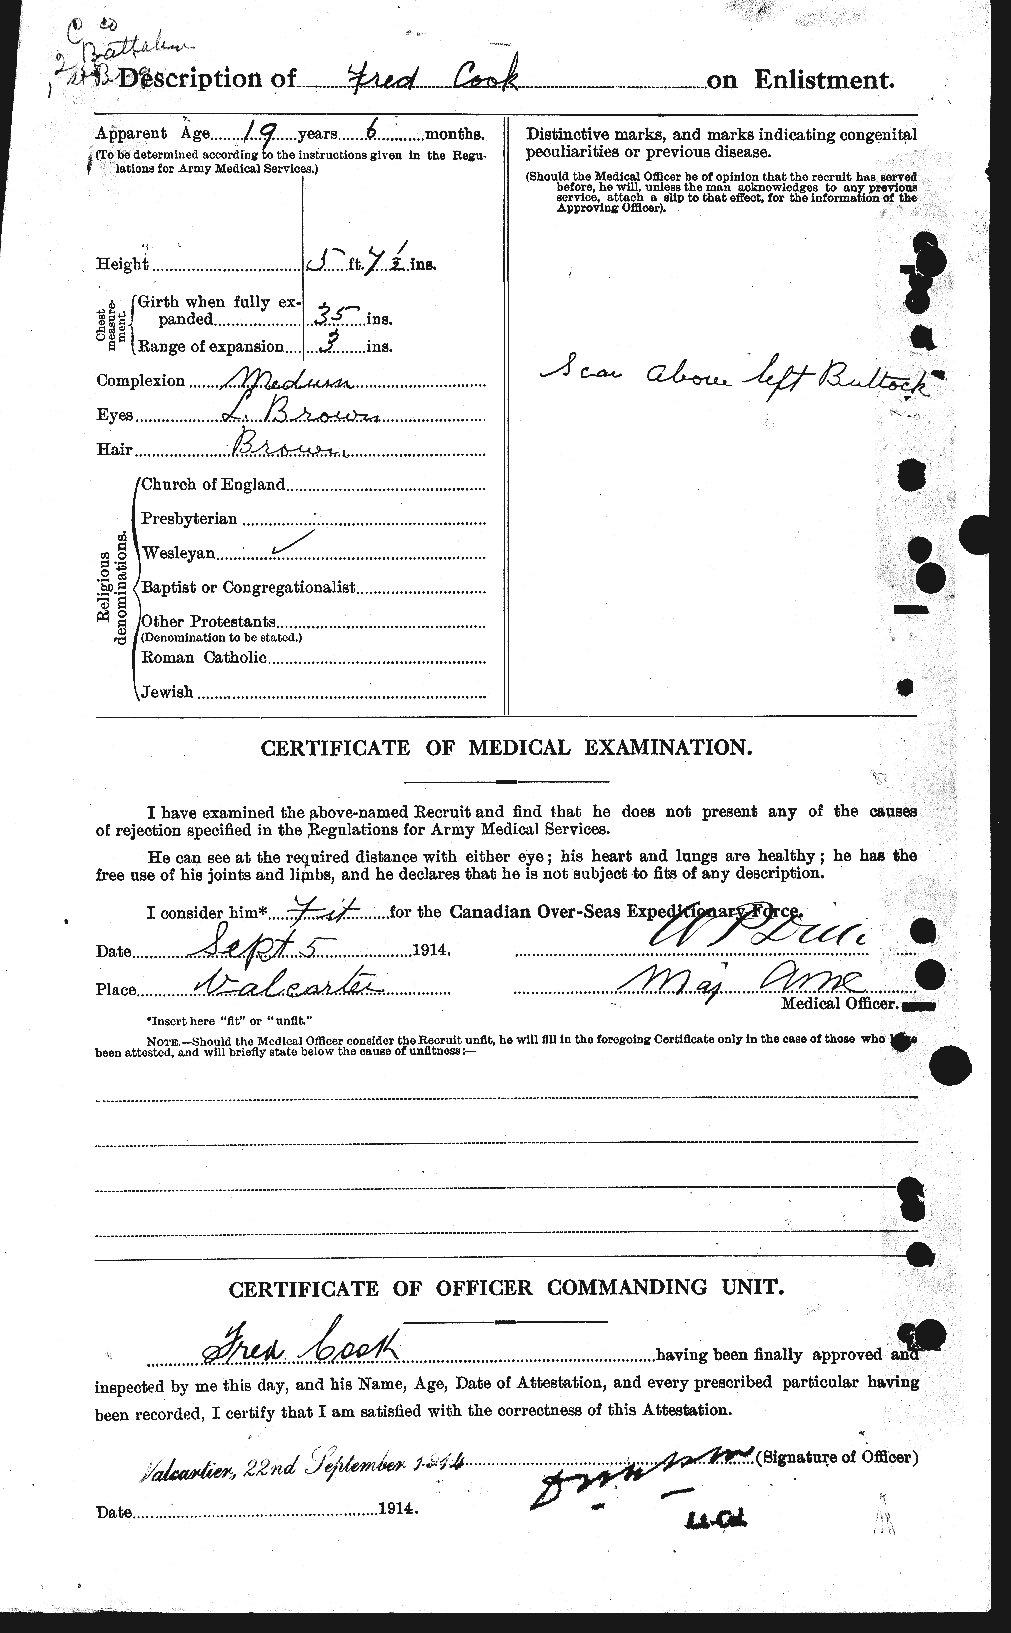 Dossiers du Personnel de la Première Guerre mondiale - CEC 073880b